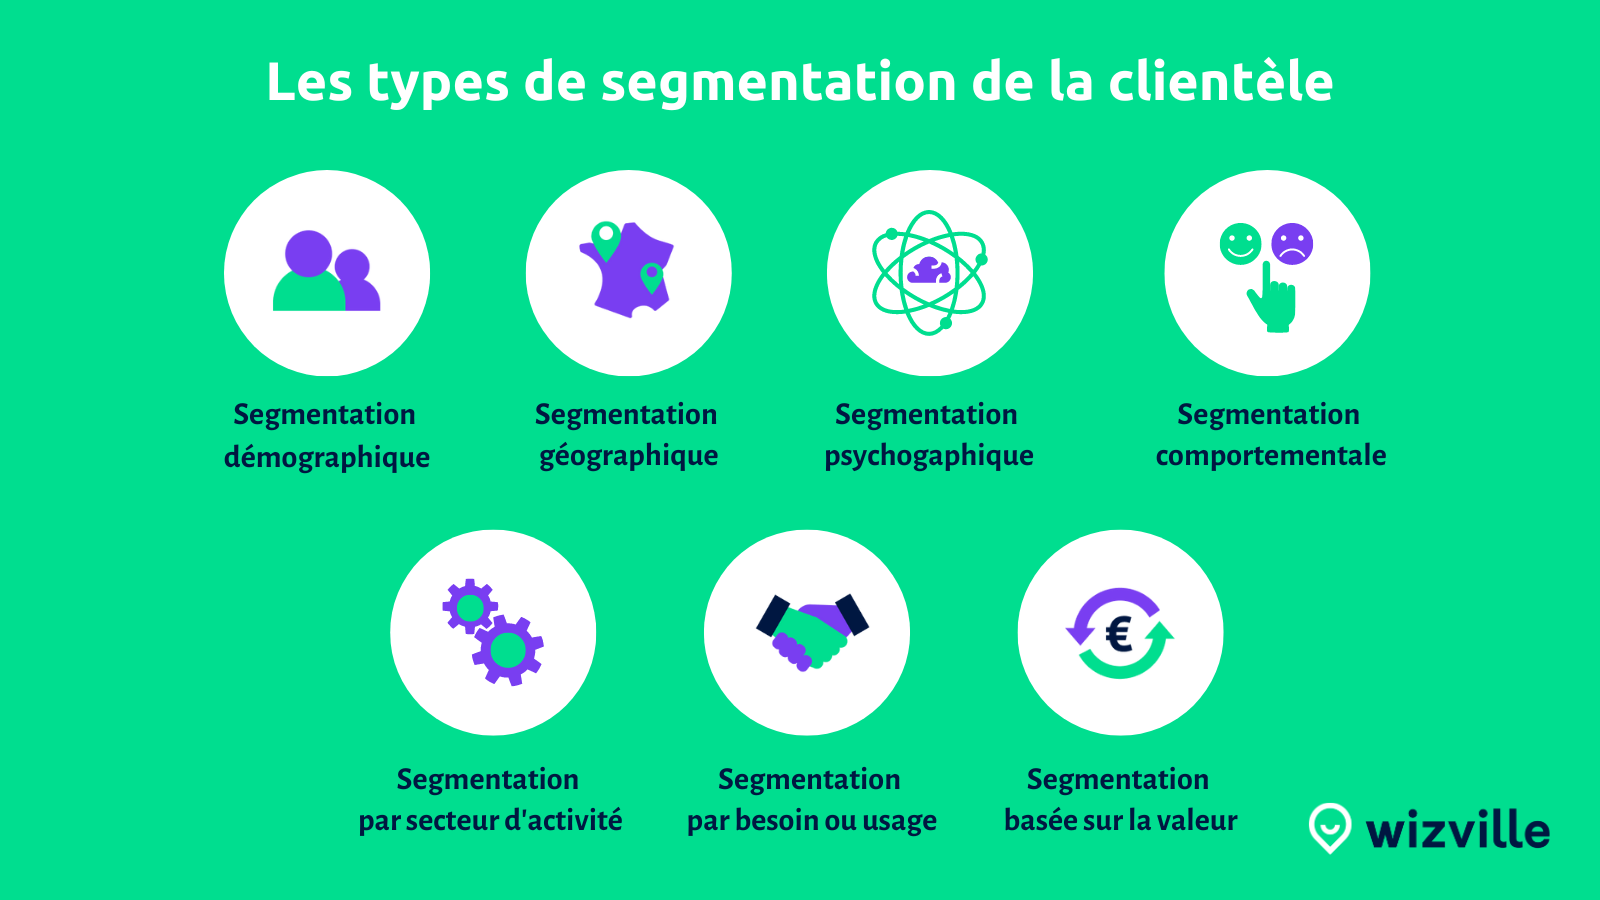 Les types de segmentation de la clientèle